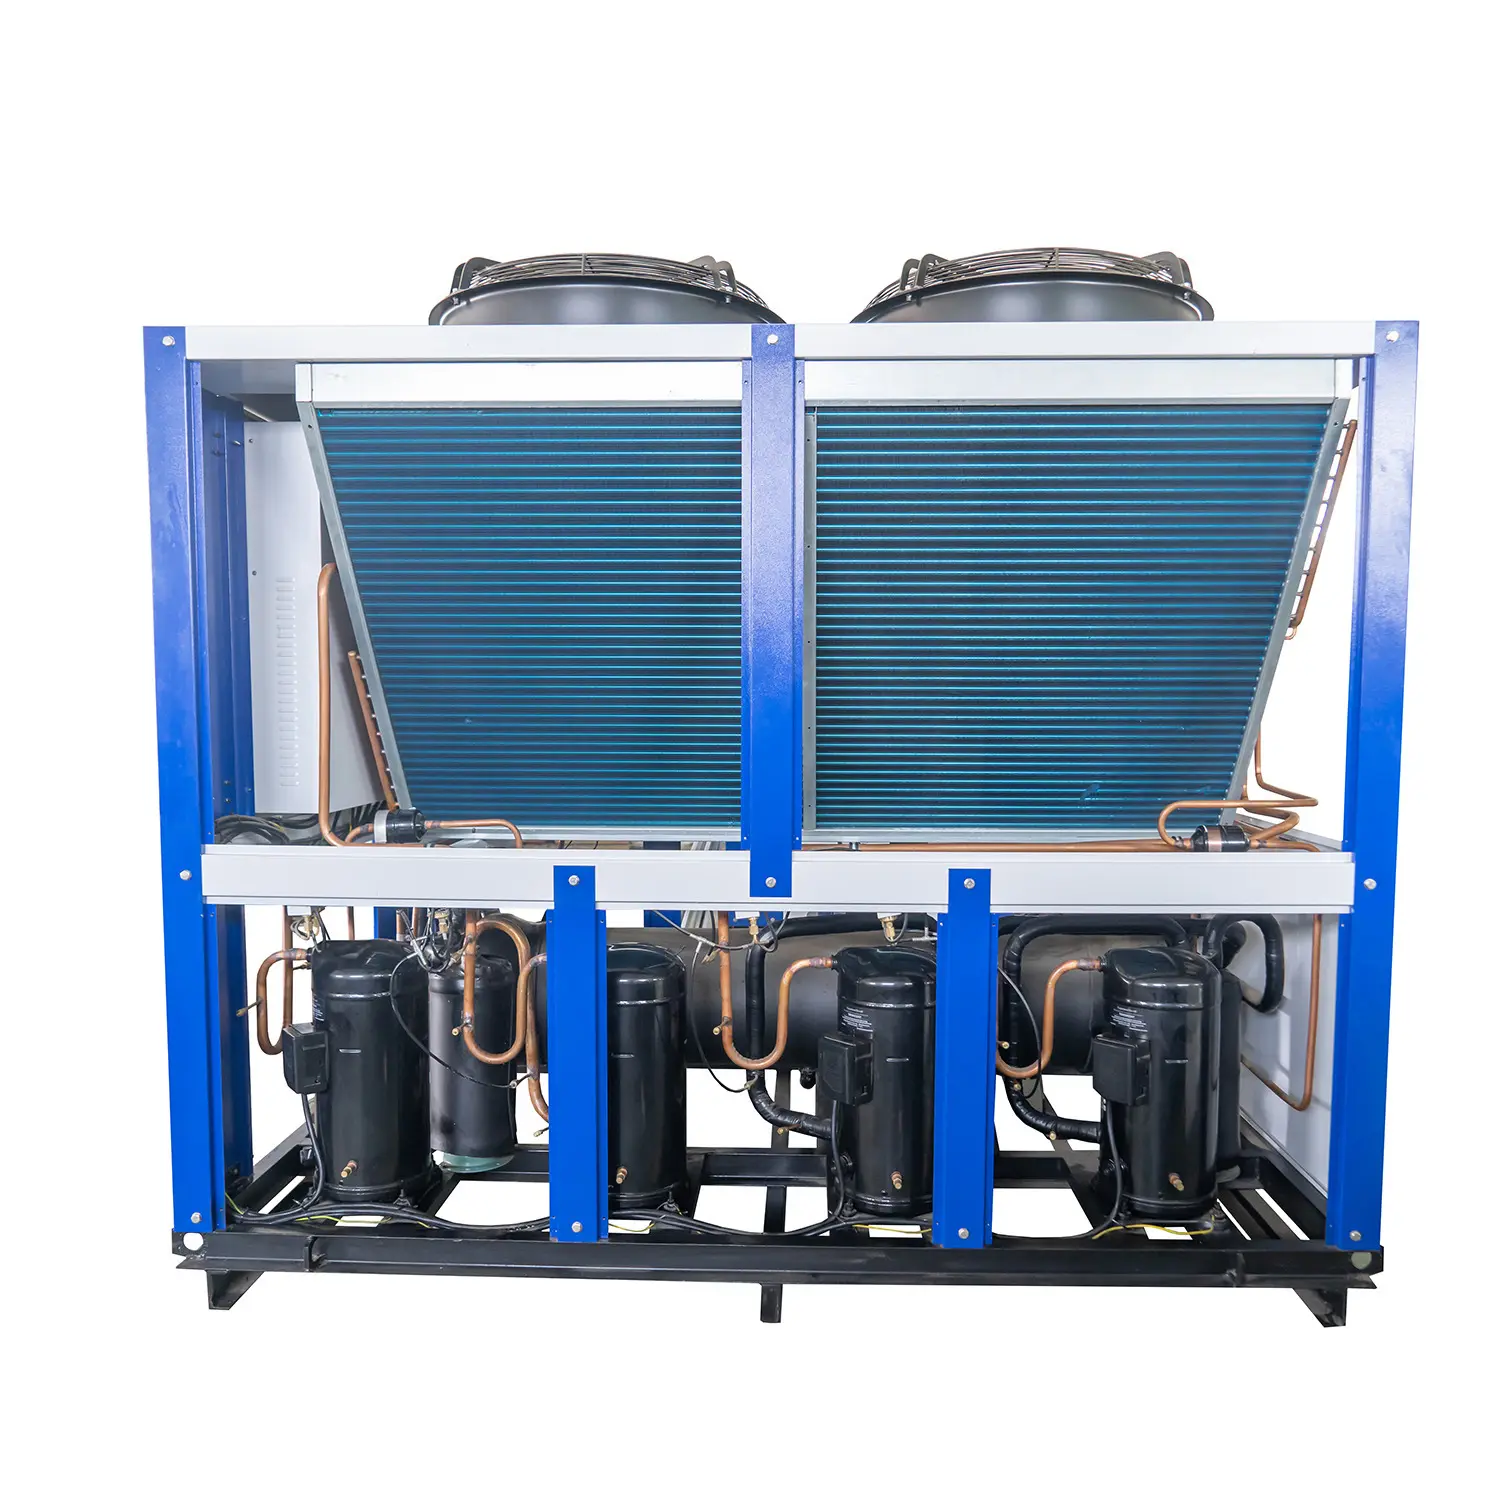 Endüstriyel soğutulmuş su 10 Ton 30 Kw hava soğutmalı su soğutucu fiyat ücretsiz soğutma için